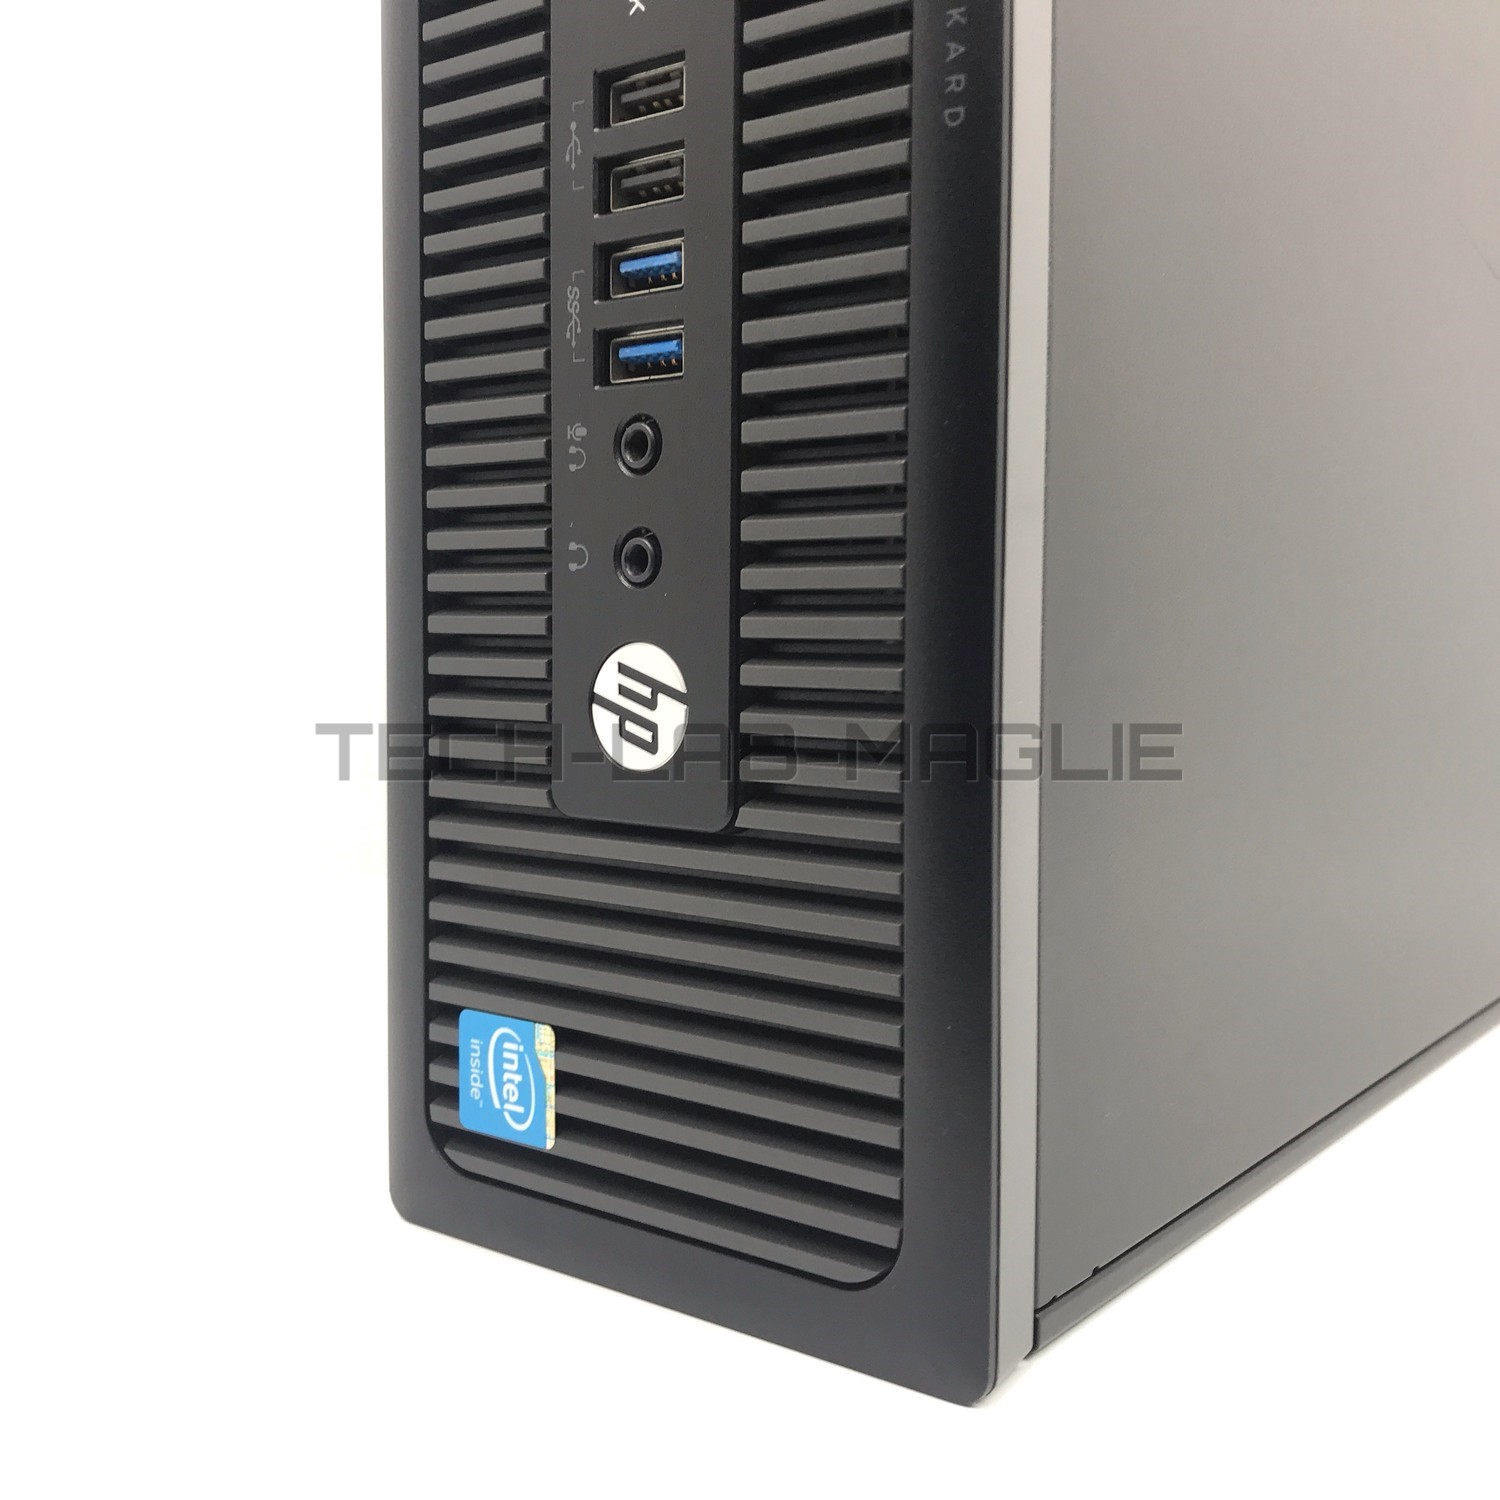 COMPUTER RICONDIZIONATO HP PRODESK 600 G1840 2,8GHZ 8GB RAM 500GB HDD WIN 10